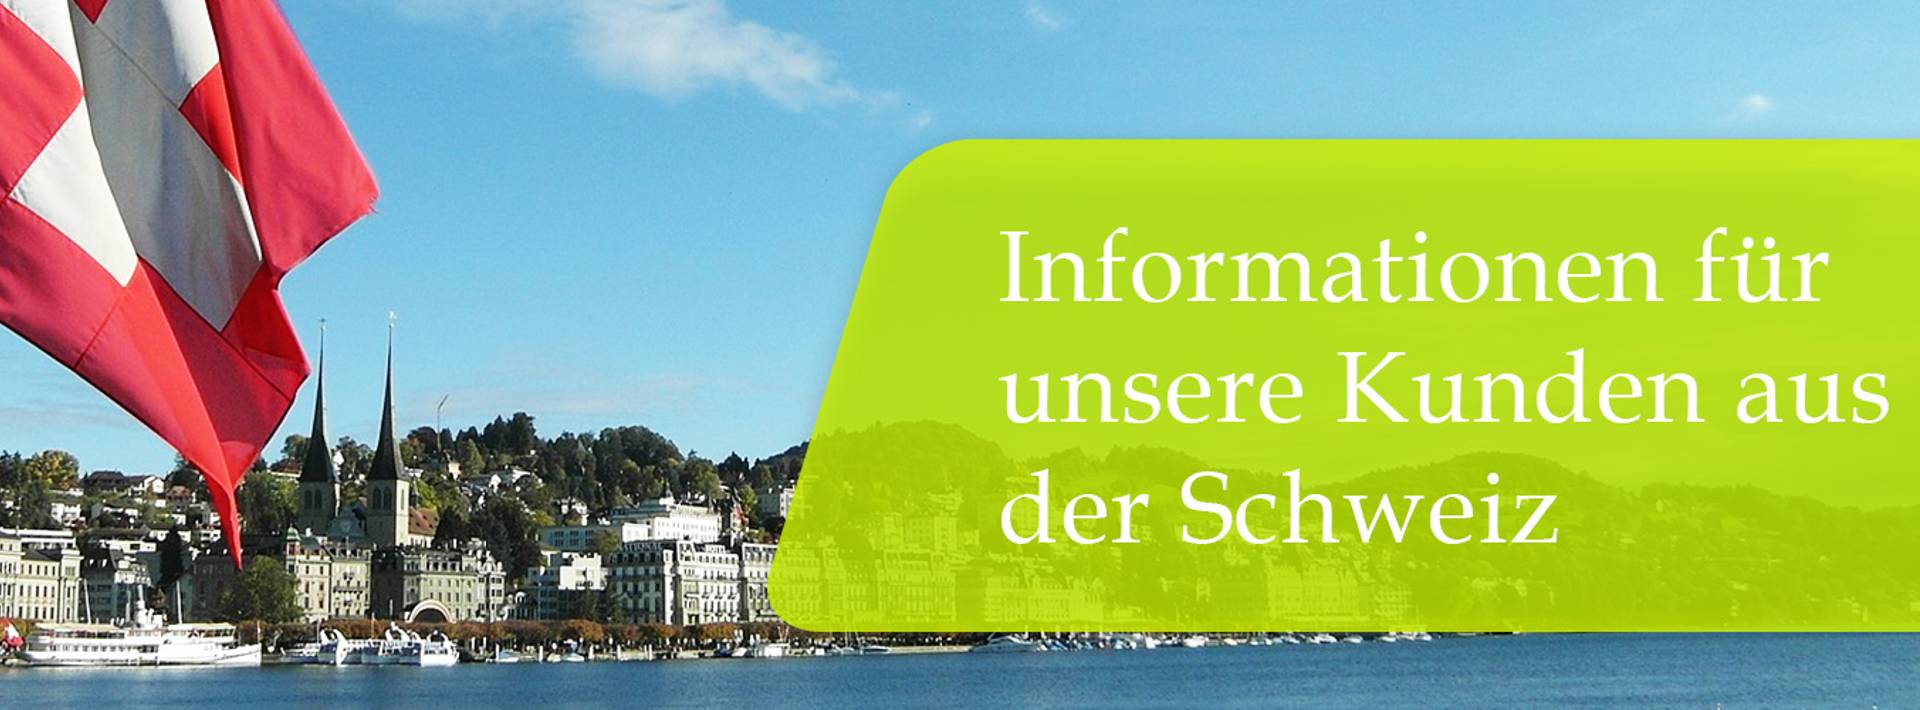 Informationen Schweizer Kunden